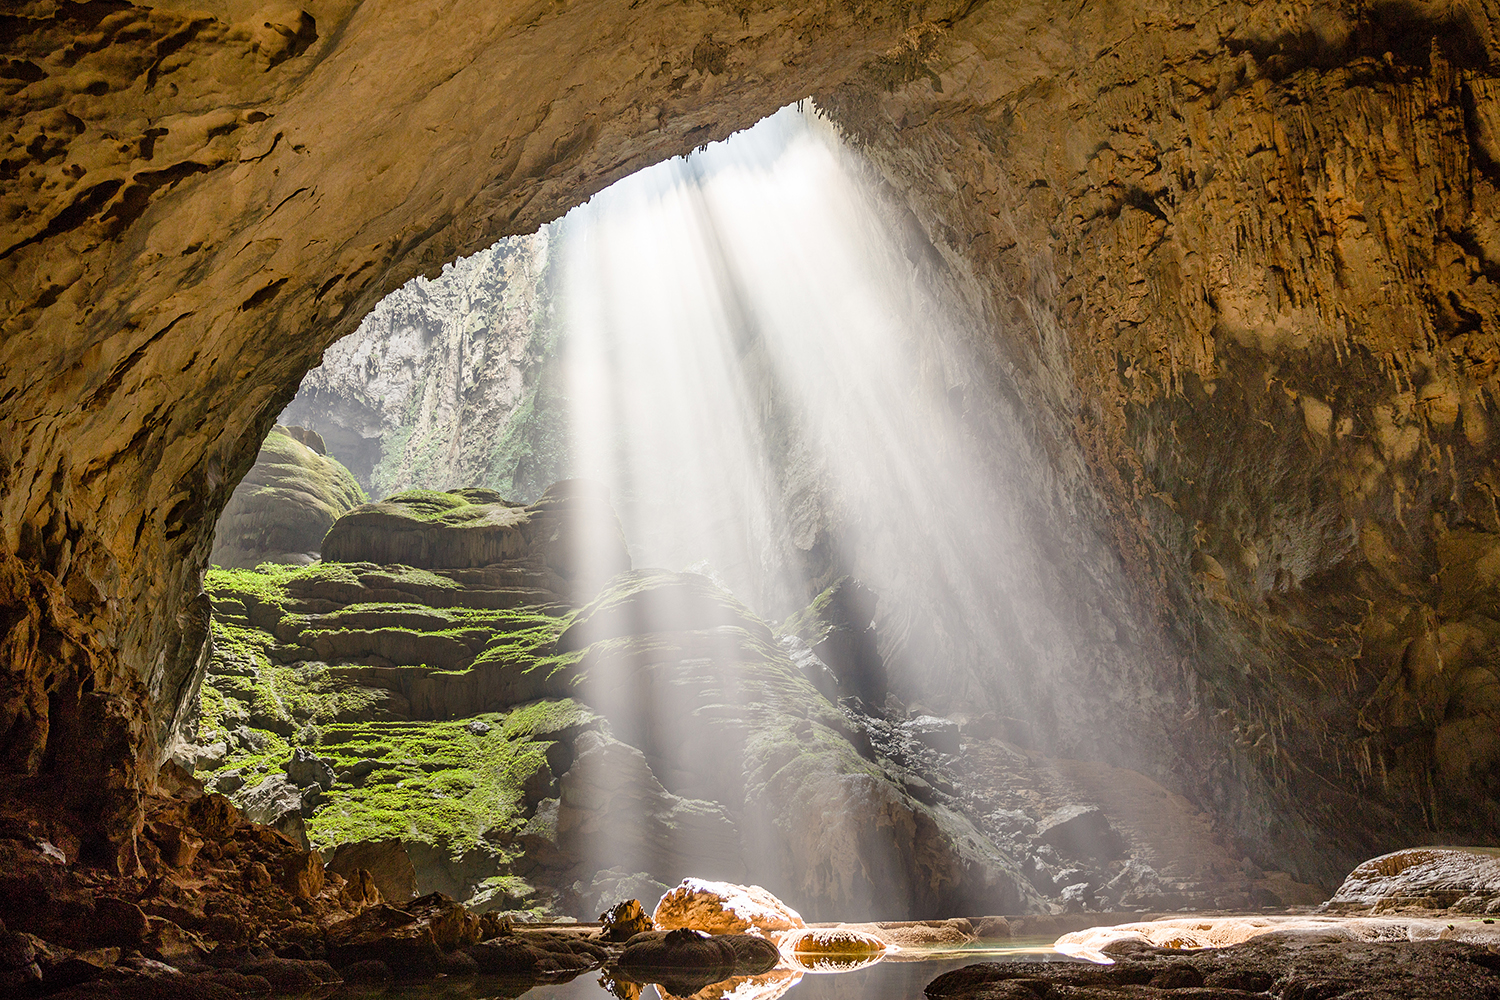 “Chinh phục Sơn Đoòng-hang động lớn nhất thế giới” được đánh giá là một trong những tour du lịch mang đẳng cấp quốc tế.